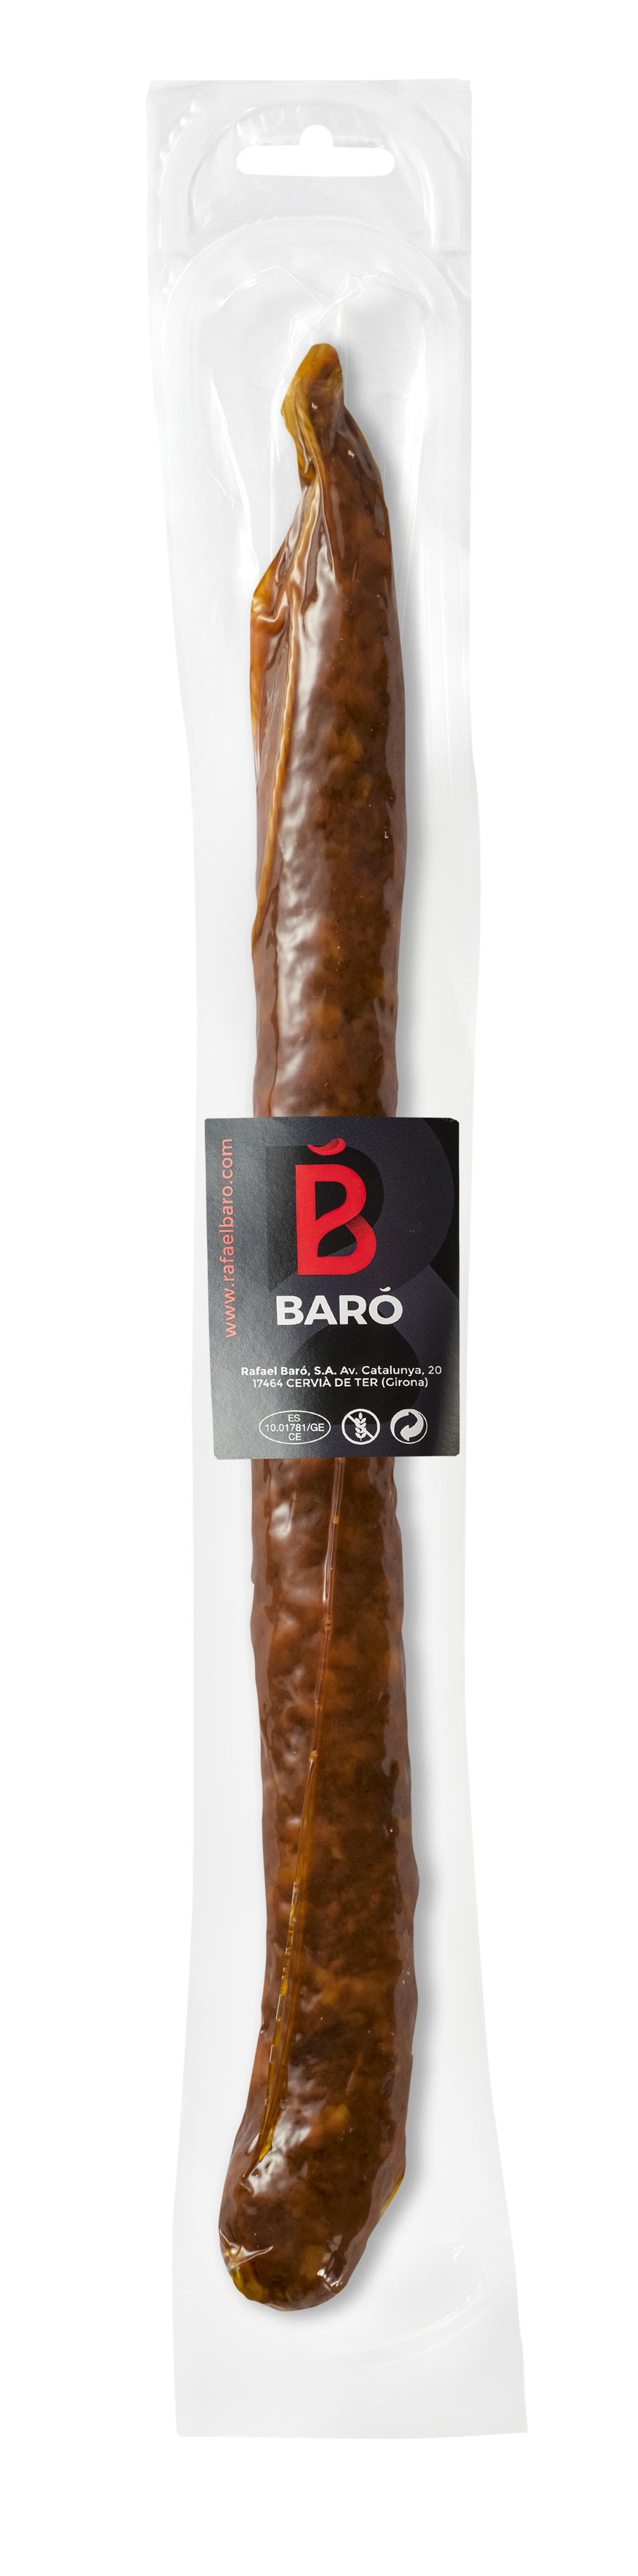 Baro Fuet Chorizo Spicy (150g)